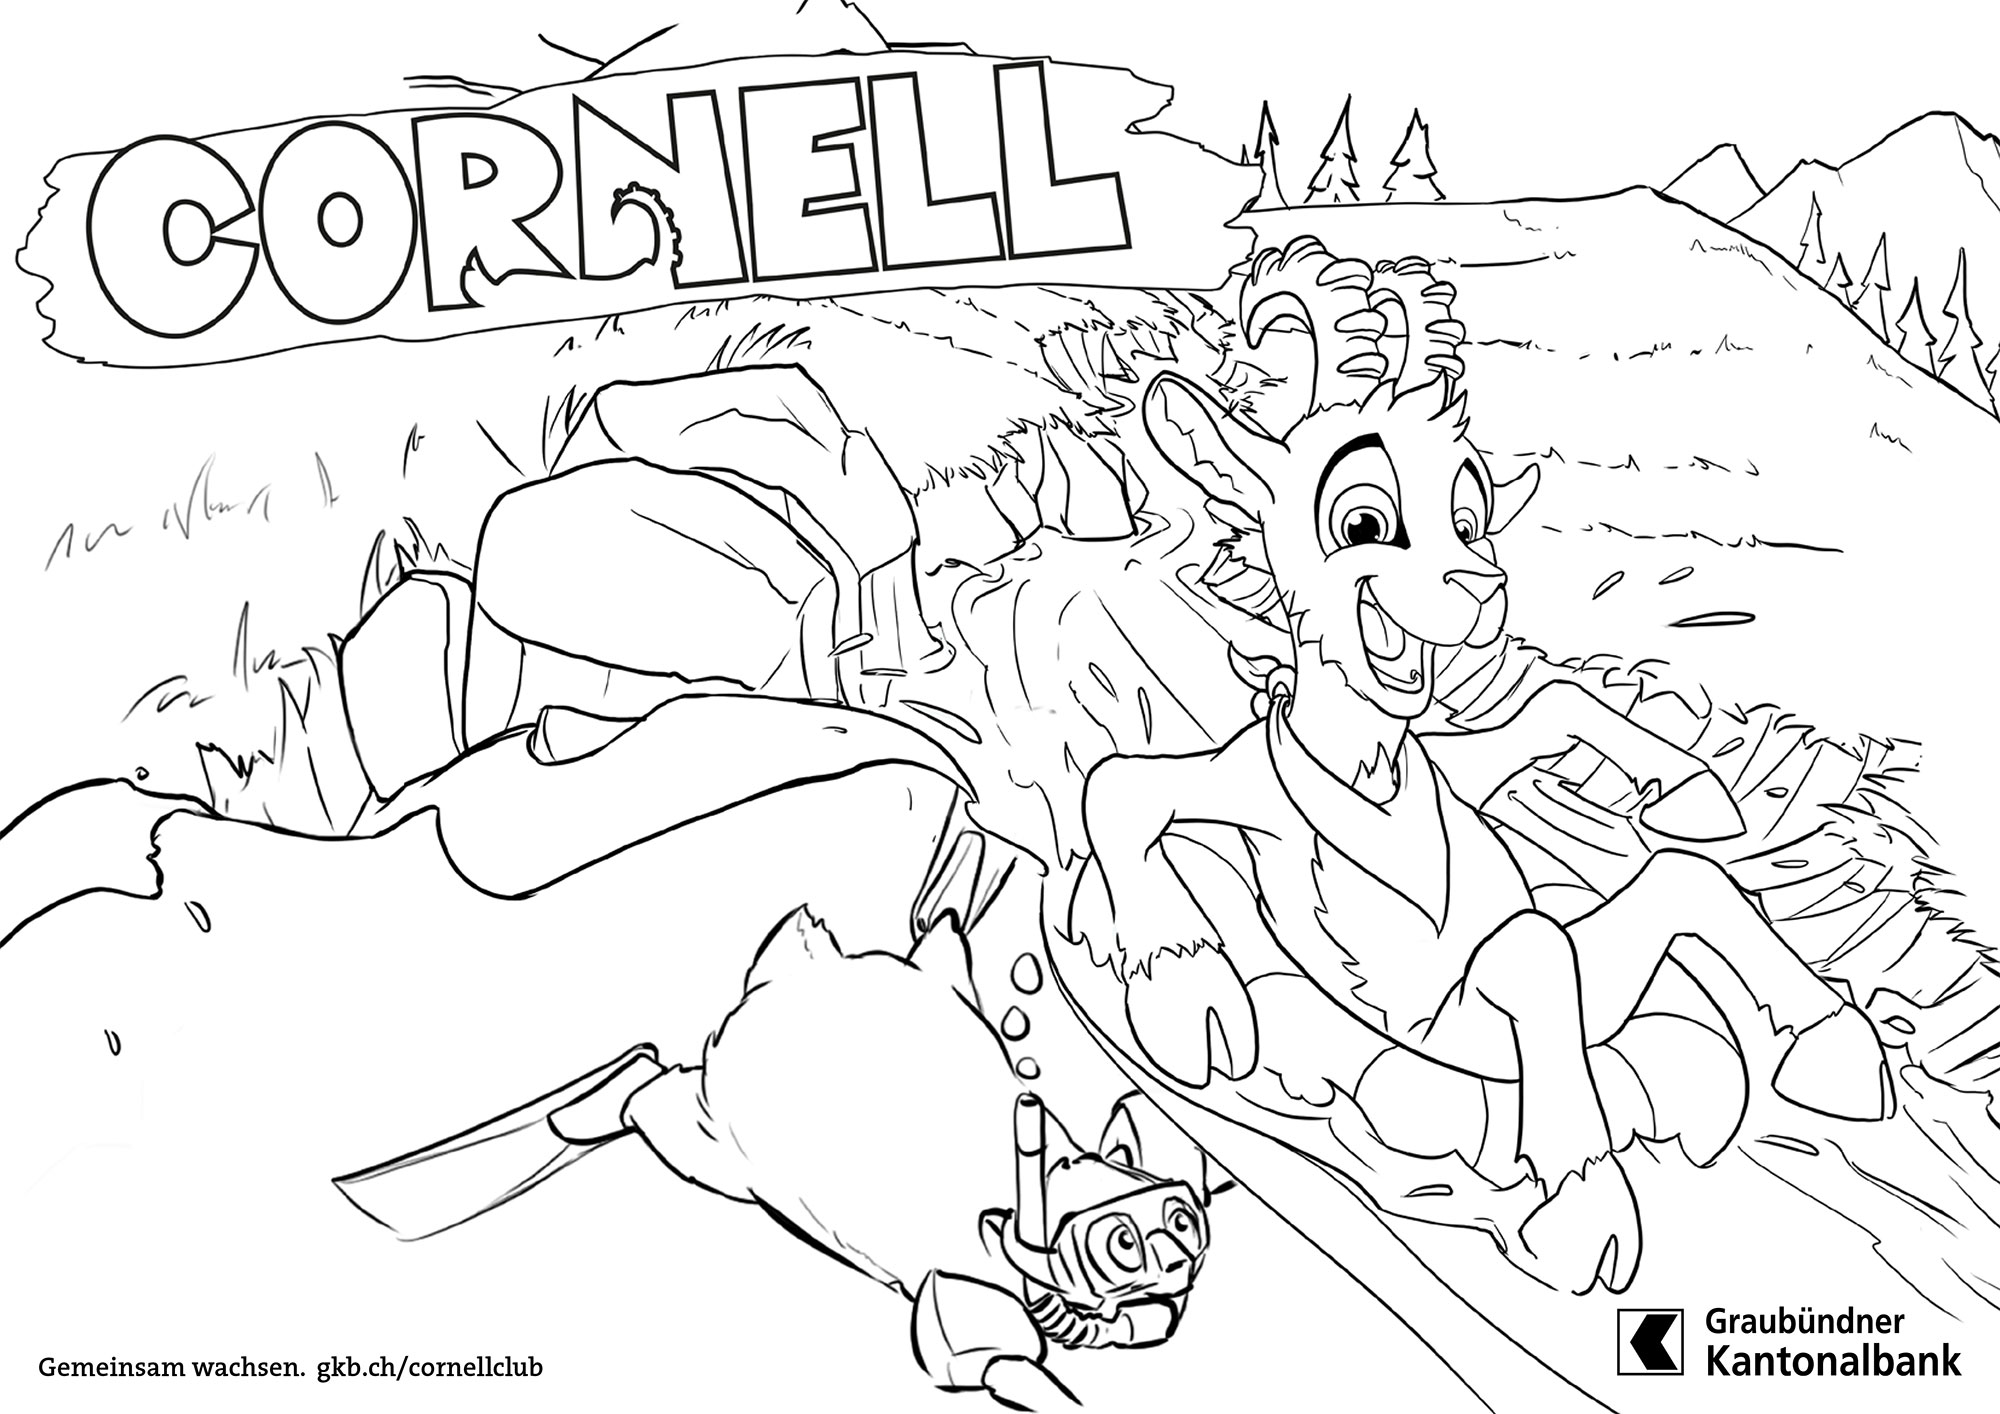 Cornell und der Huskyschlitten